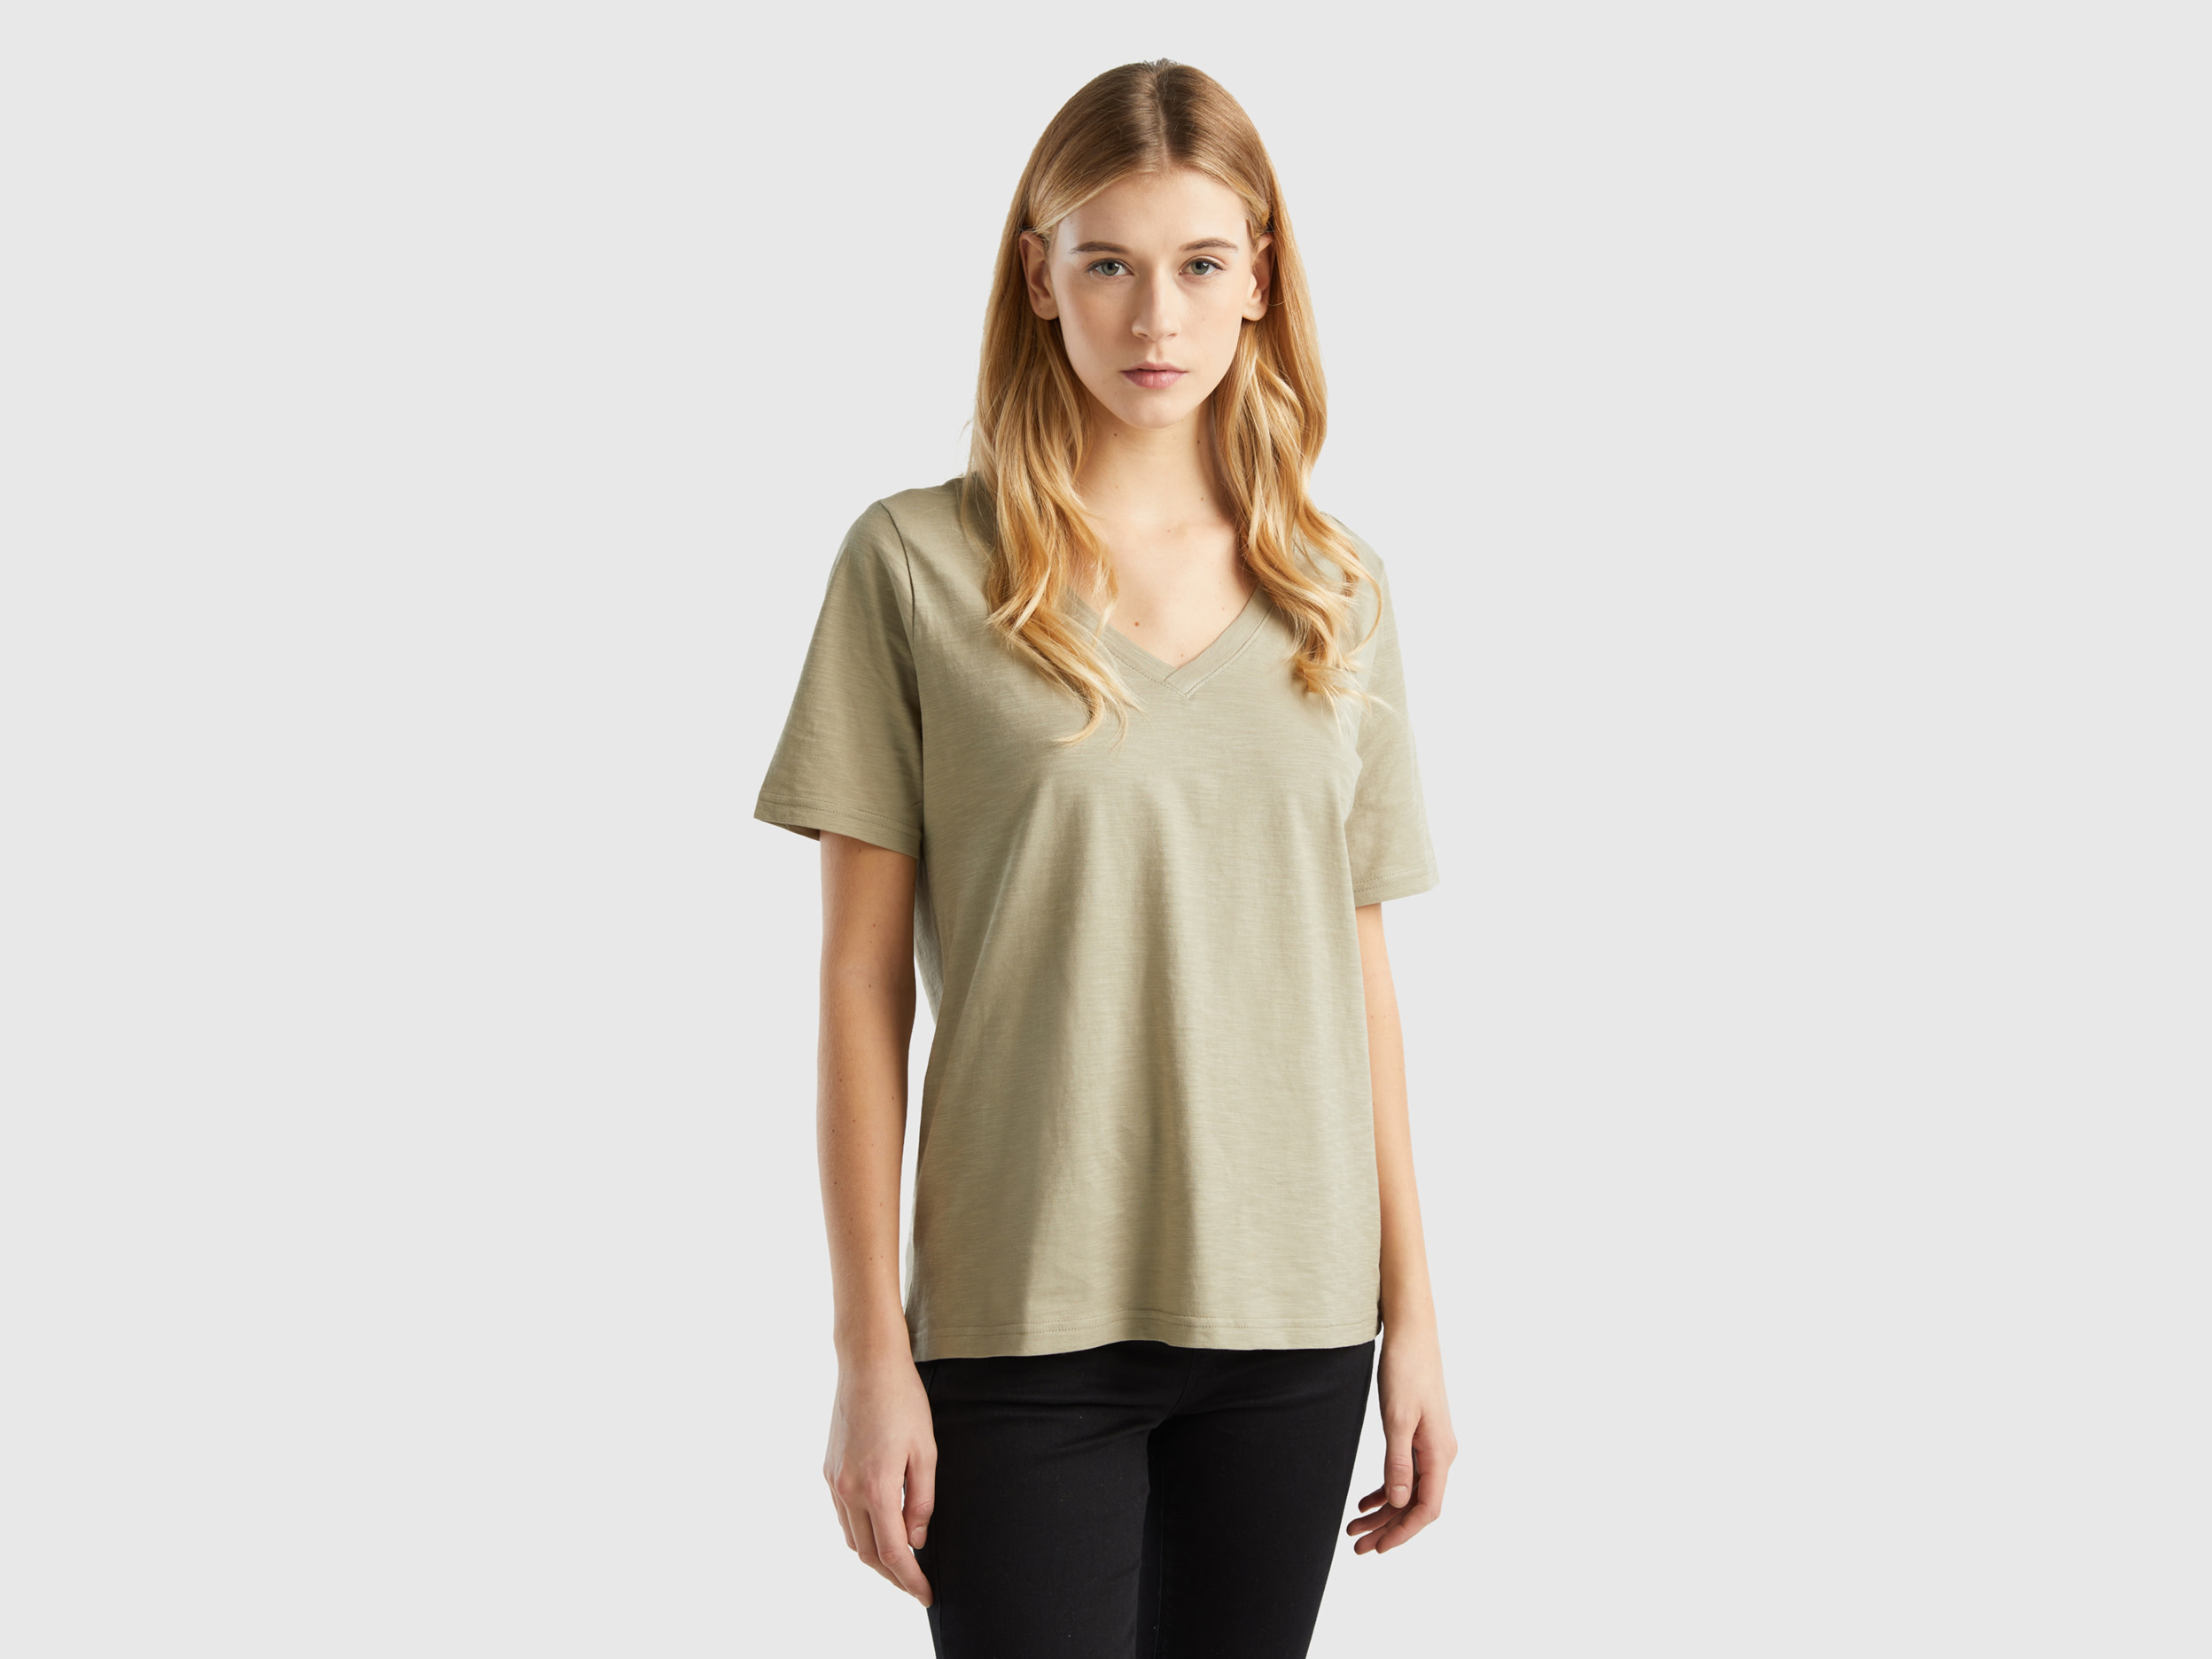 Benetton, V-neck T-shirt In Slub Cotton, size S, Light Green, Women